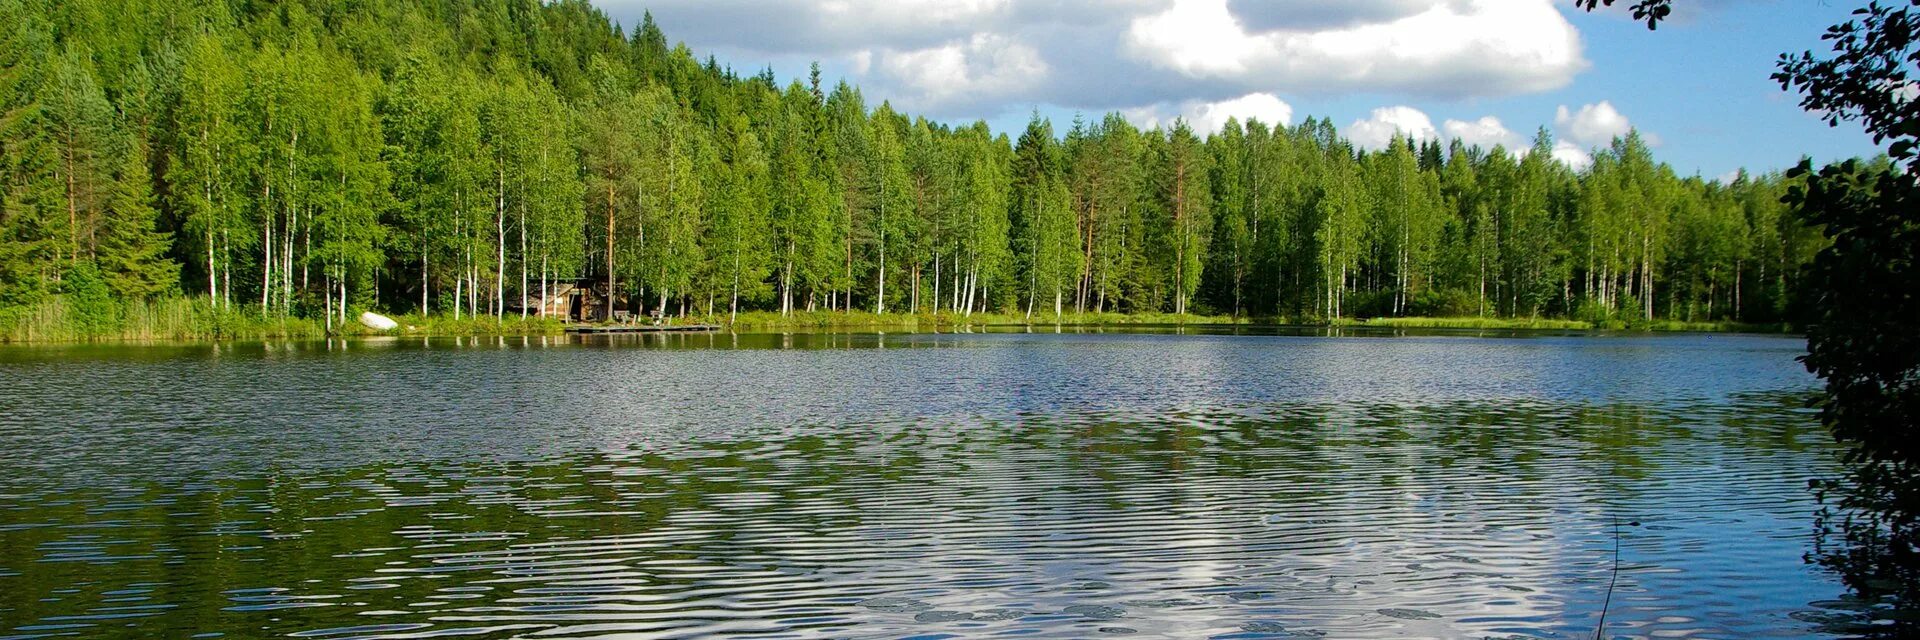 Какую страну называют страной тысячи озер. Финляндия тысяча озер. Финляндия Страна тысячи озер. Карелия 1000 озер. Финляндия Страна 1000 озер.